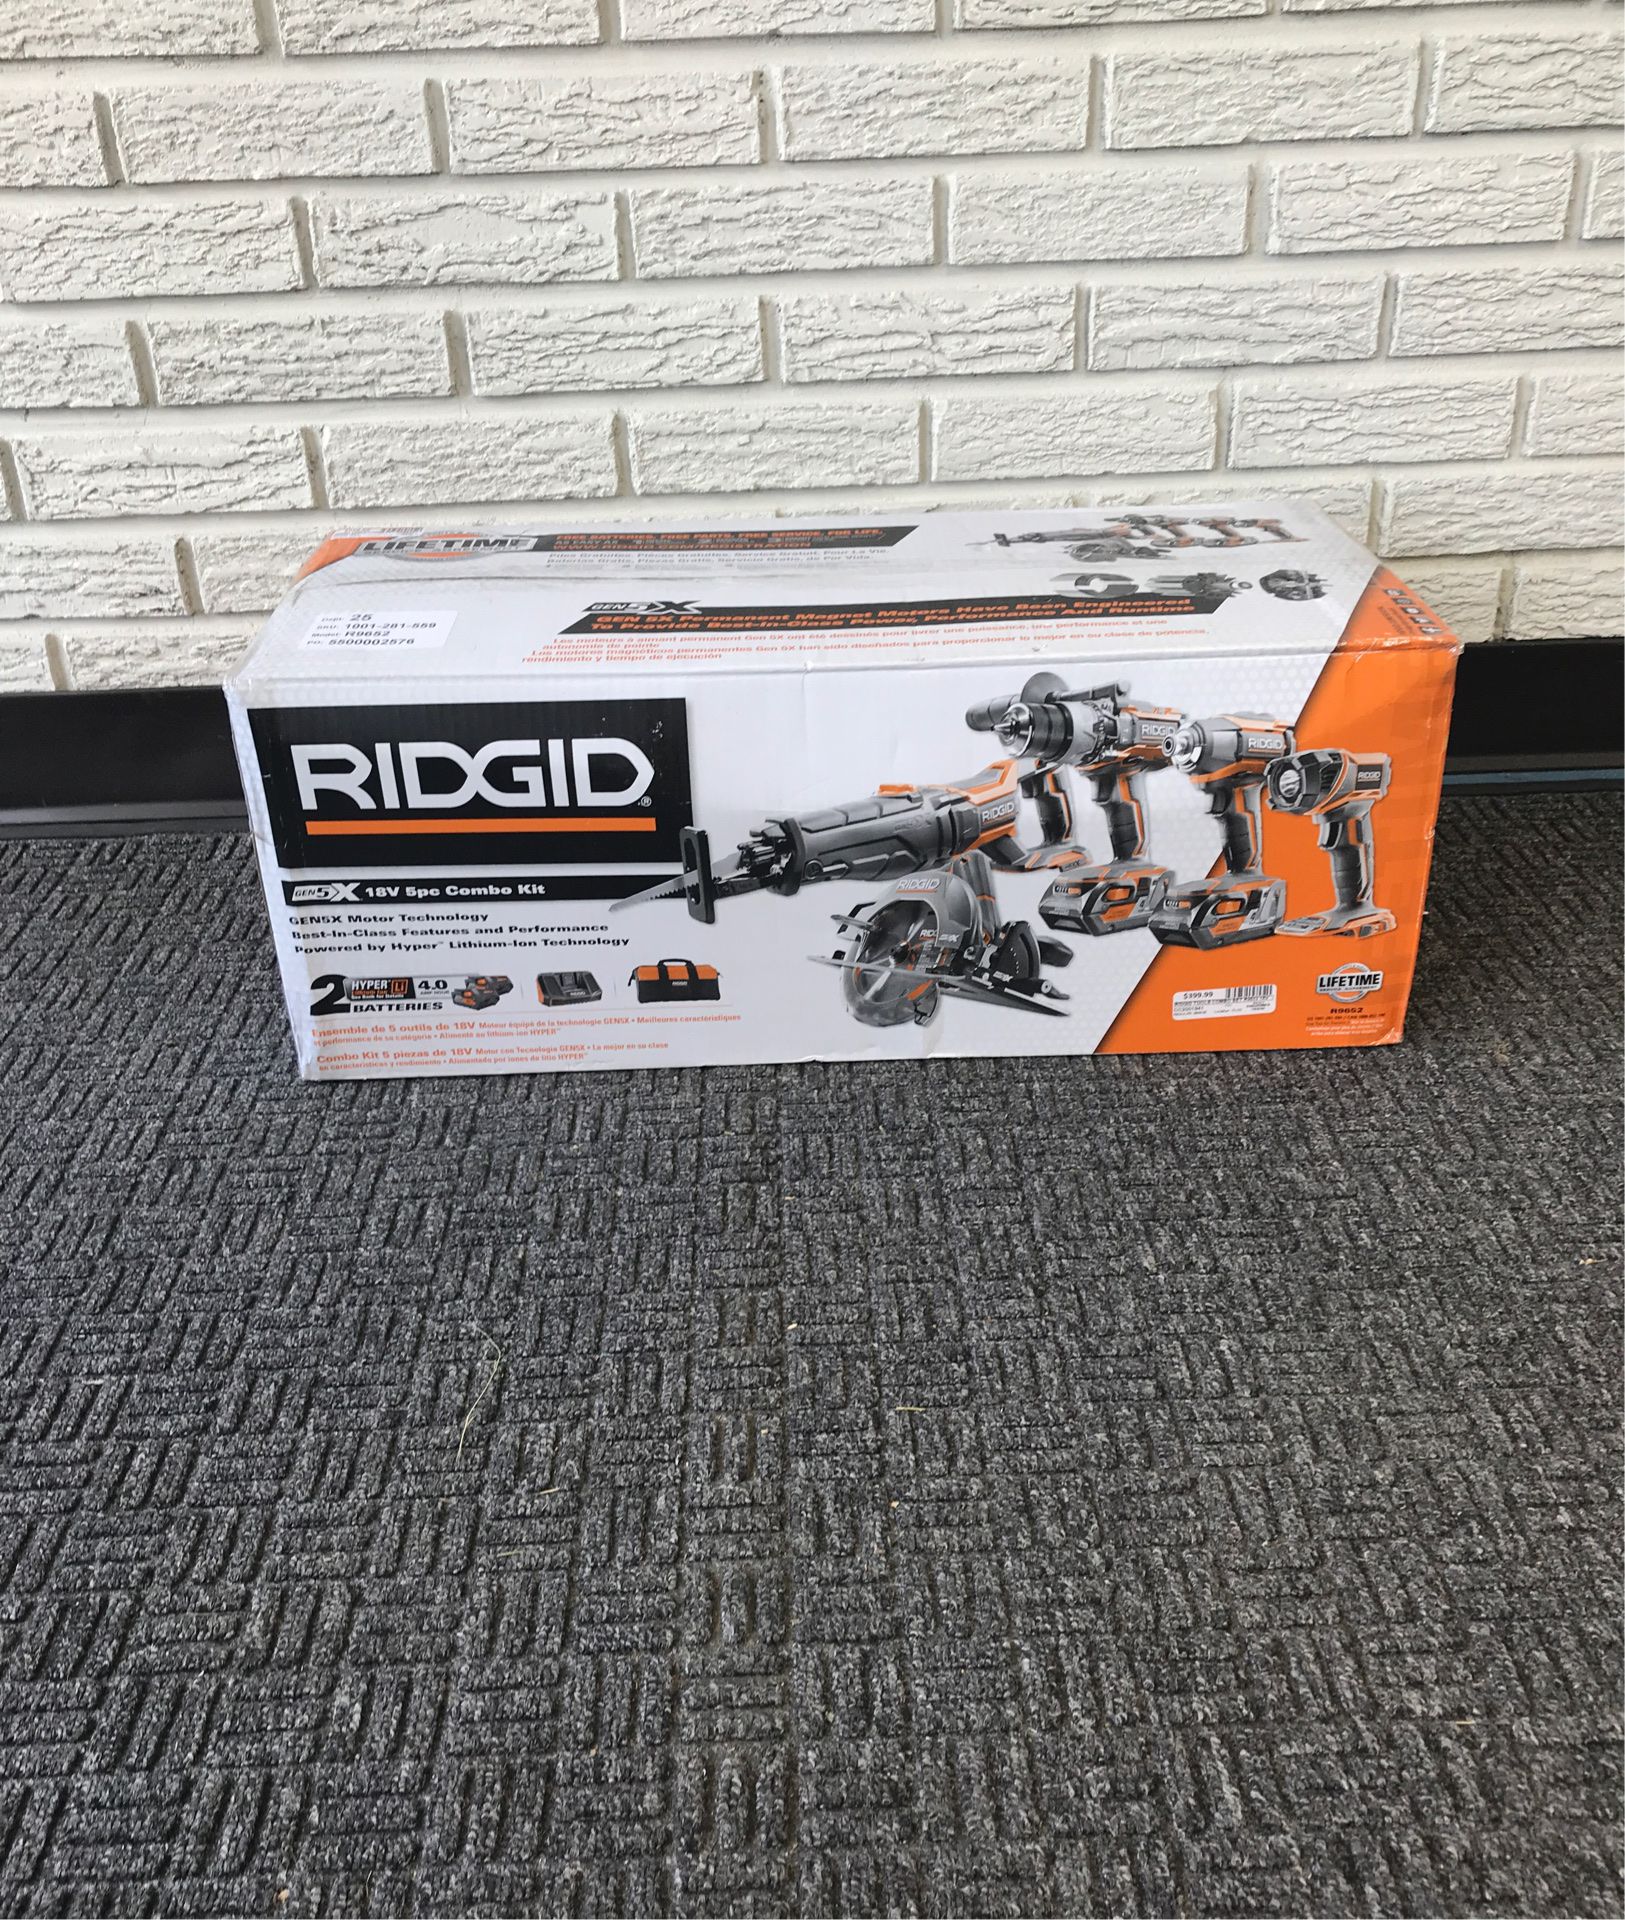 RIDGID Gen5X 18 v 5pc combo kit